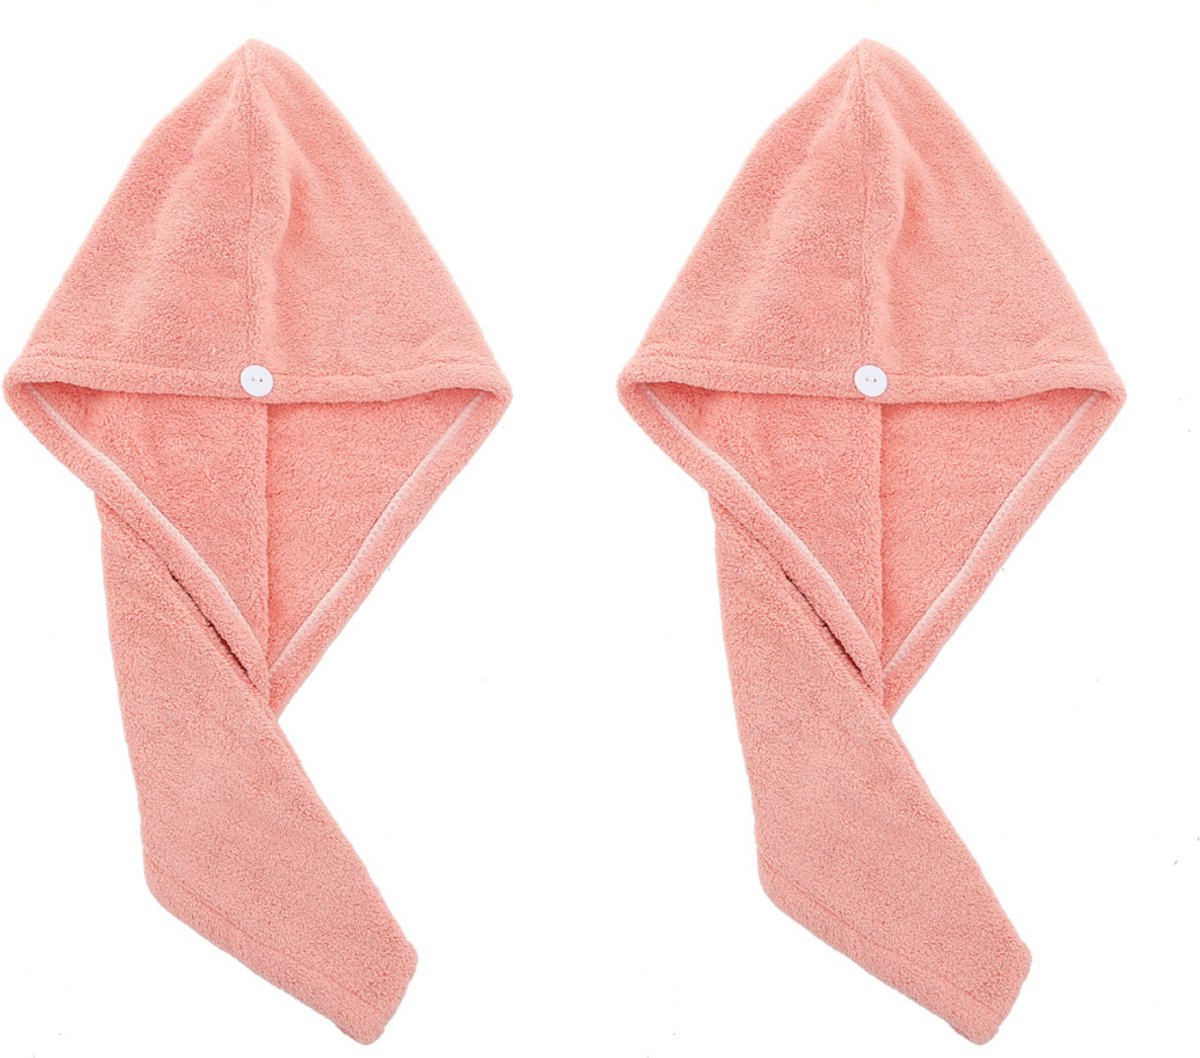 2x Haarhanddoek - Hoofdhanddoek - Hair towel - Sneldrogende handdoek - Haardroger - Haar handdoek - Roze